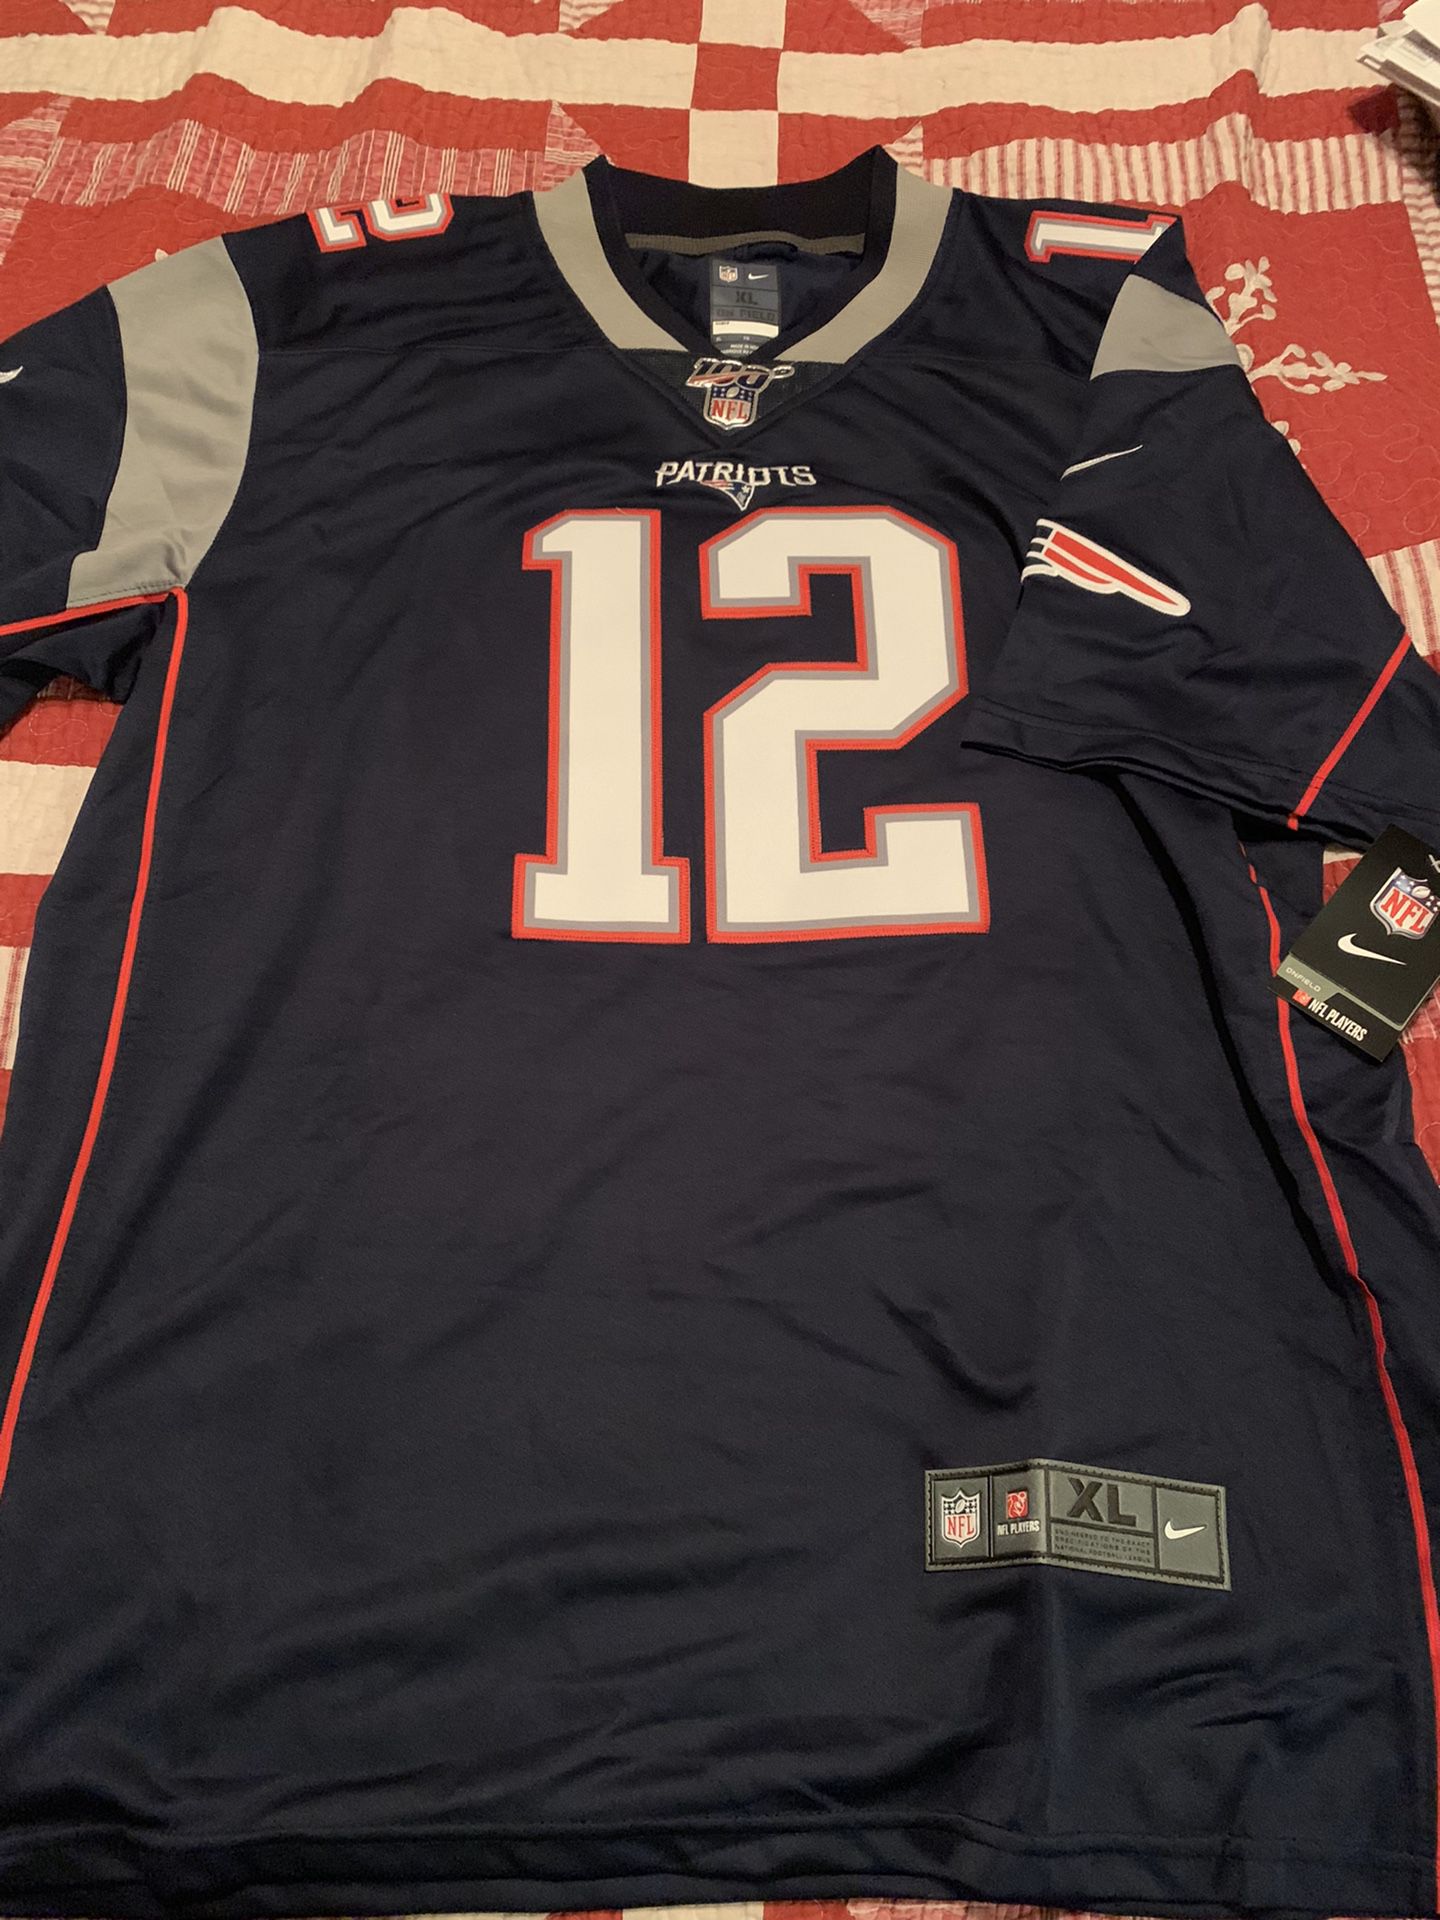 Patriots Tom Brady Jersey size XL